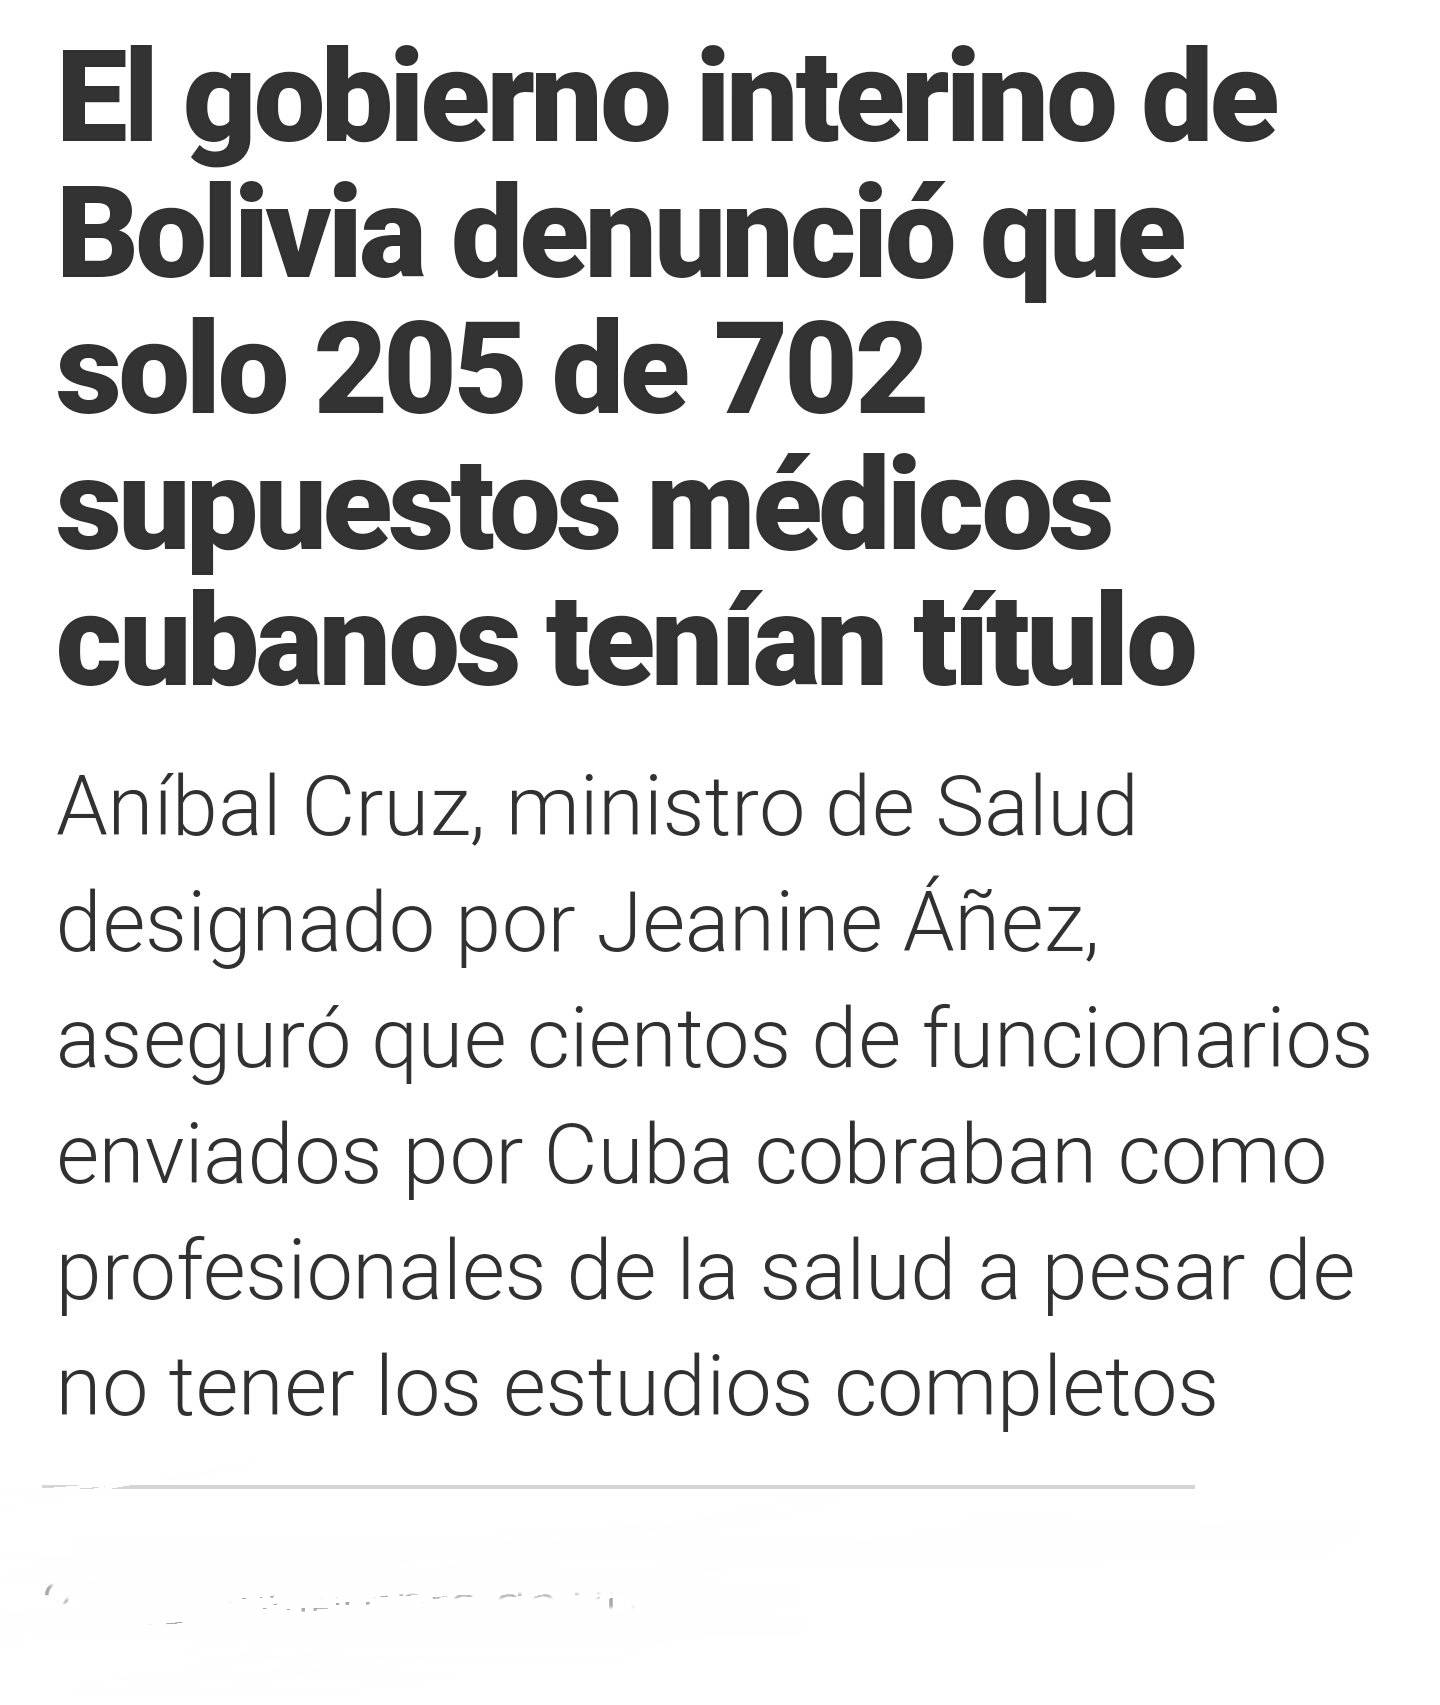 Médicos cubanos no pasan prueba para trabajar en Uruguay, en Bolivia los deportaron por no ser médicos